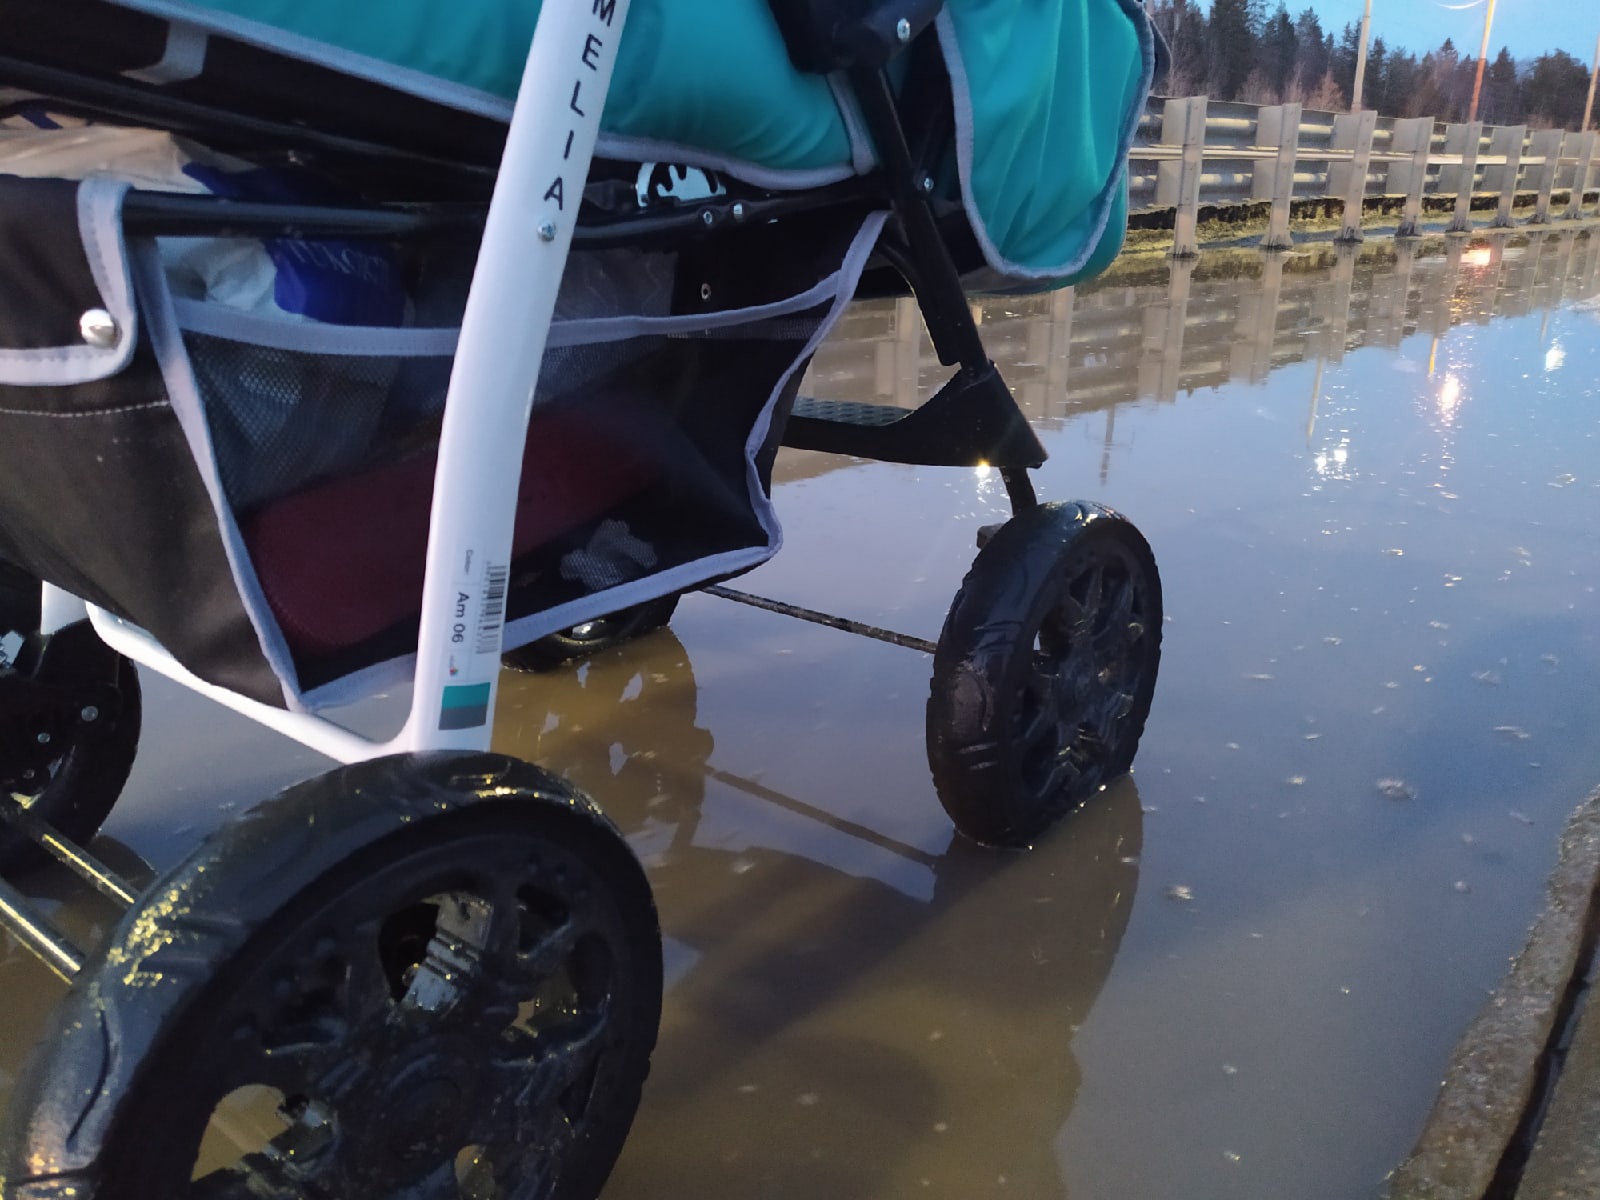 Тротуары в Петрозаводске превратились в полосу препятствий для мам с колясками (ВИДЕО)